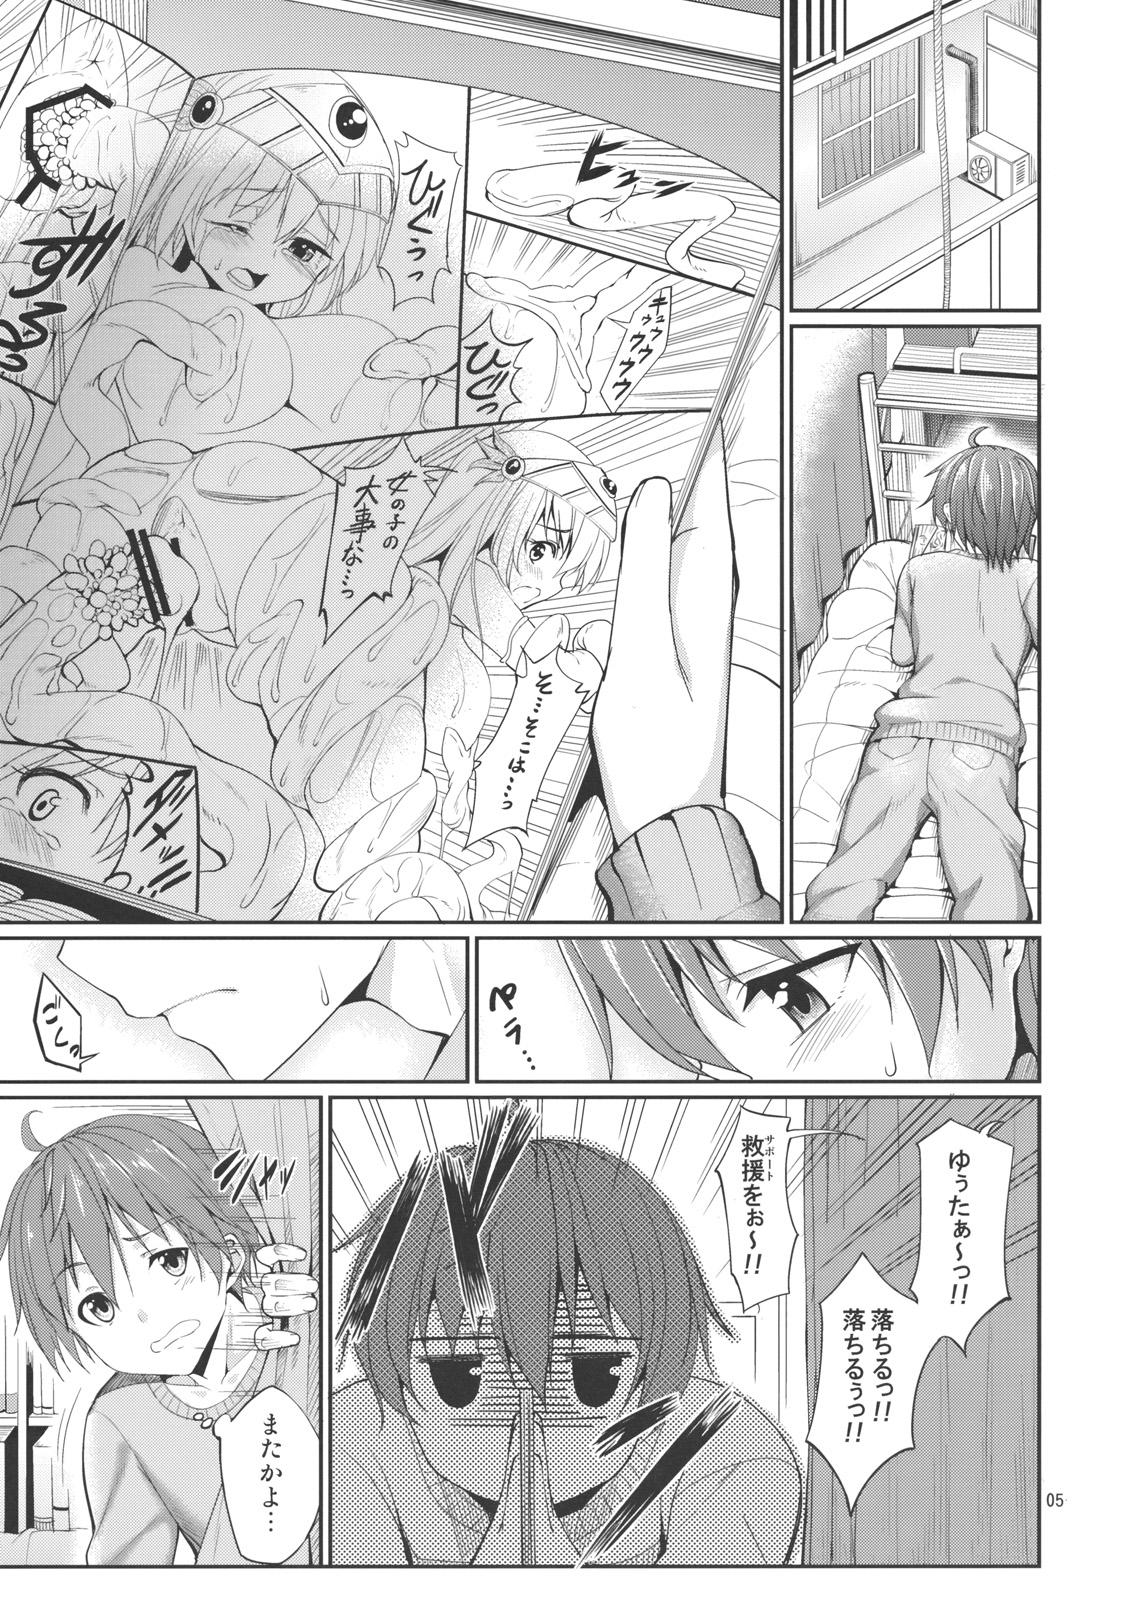 Girlfriends Rikka to Shokushu to Mousou Settei! - Chuunibyou demo koi ga shitai Twerk - Page 4